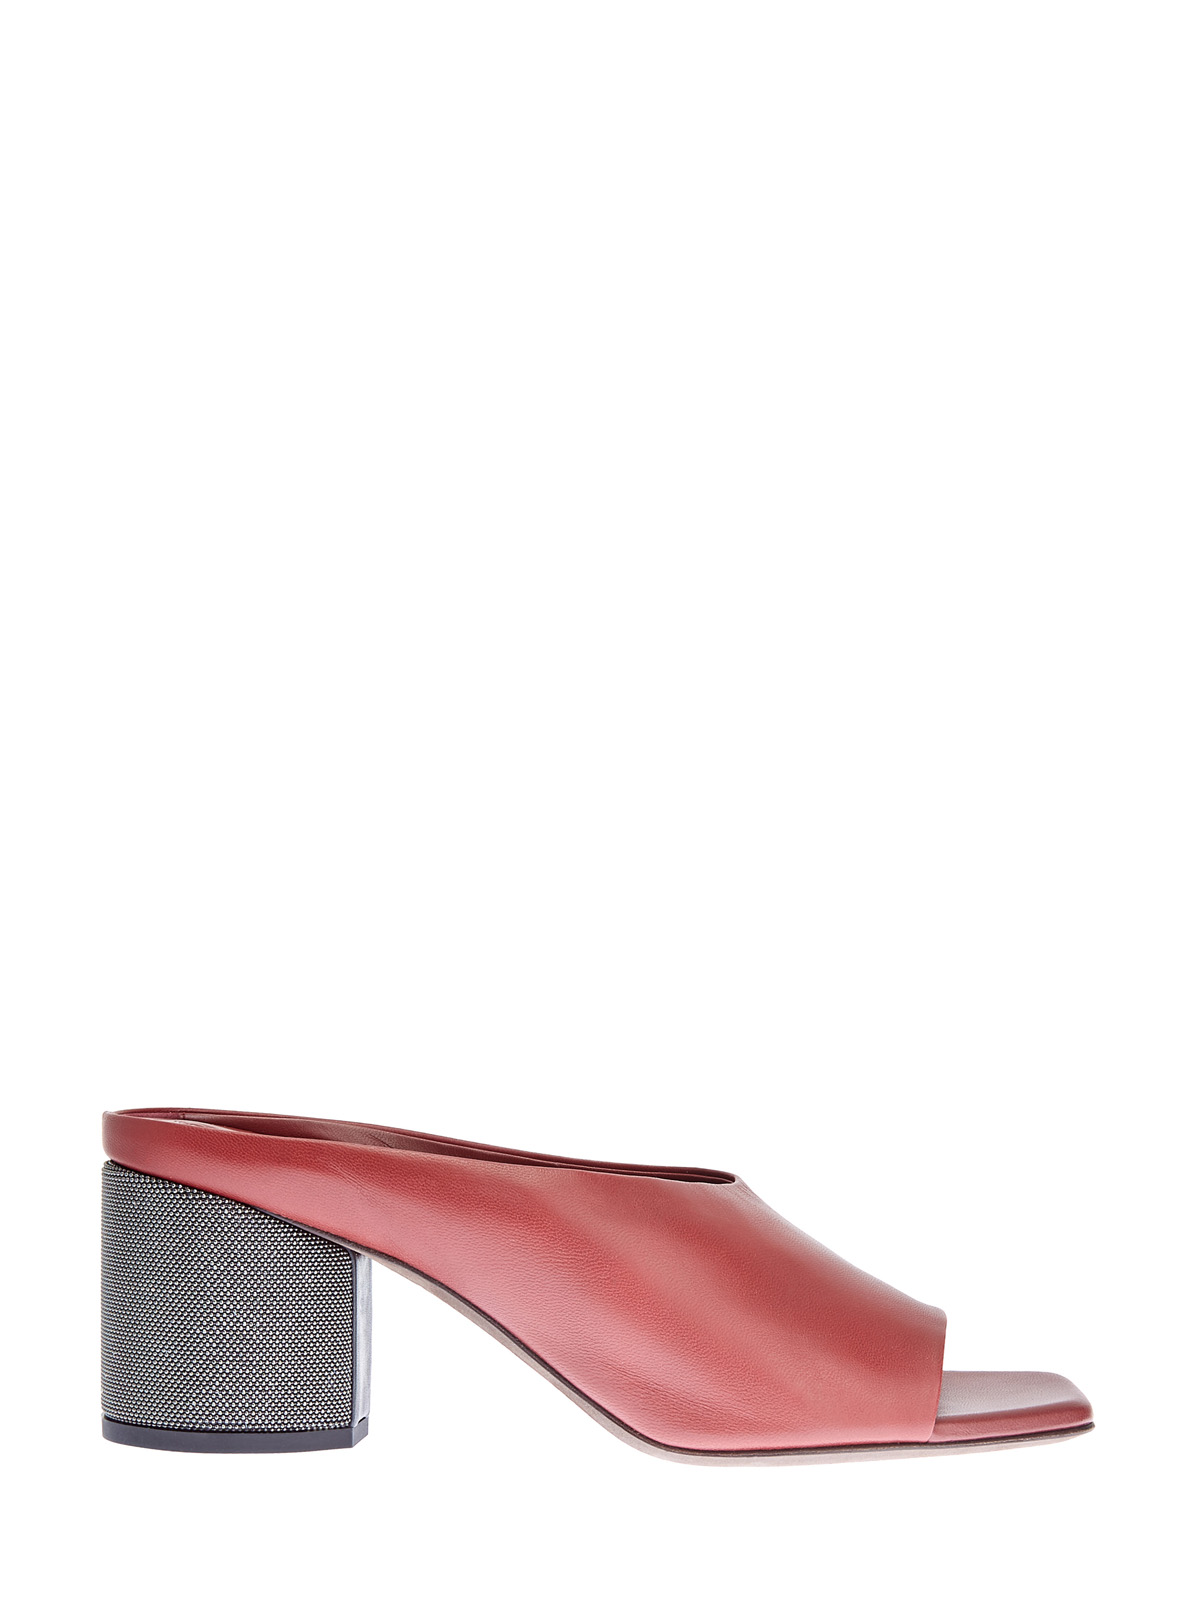 Мюли из гладкой кожи с ювелирной отделкой каблука BRUNELLO CUCINELLI, цвет красный, размер 36.5;37.5;38.5;39.5